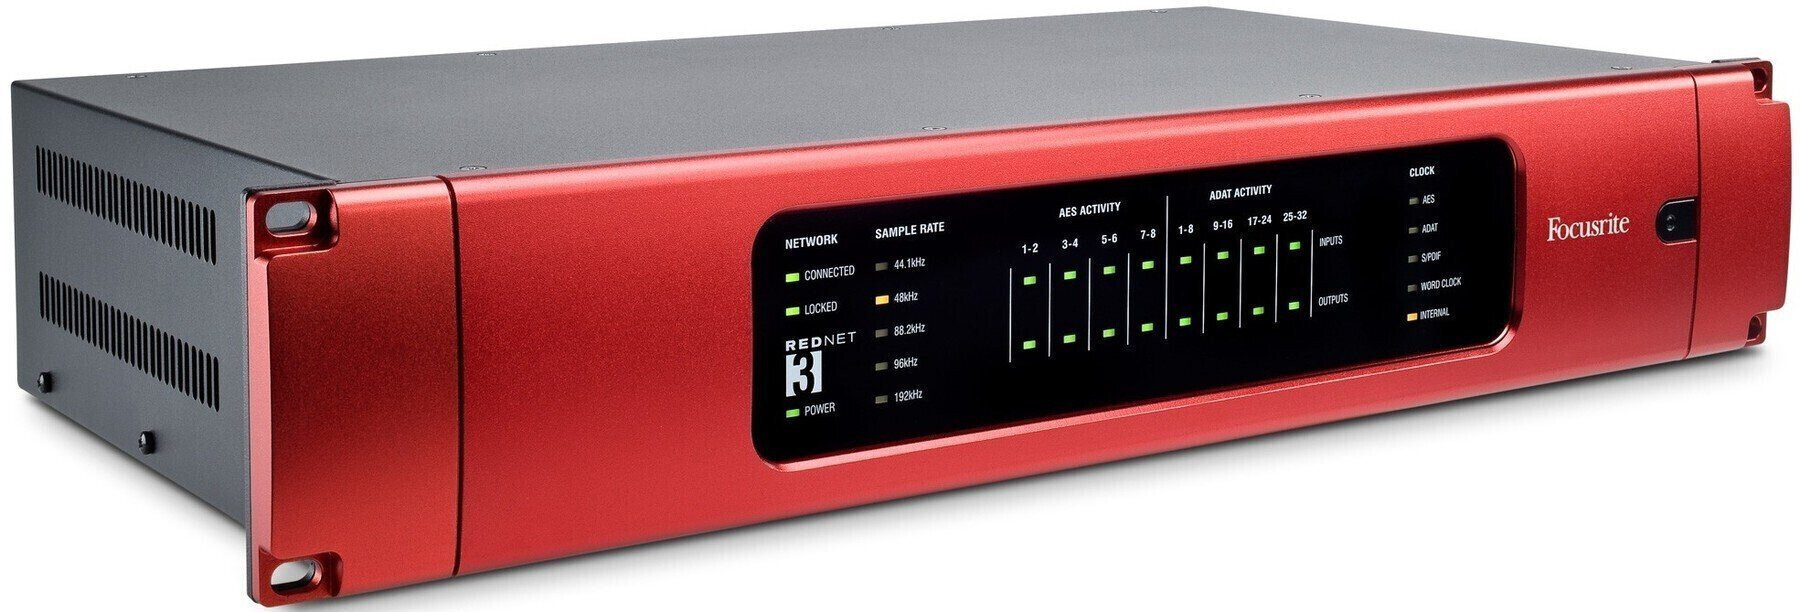 Ethernet-audioomzetter - geluidskaart Focusrite REDNET3